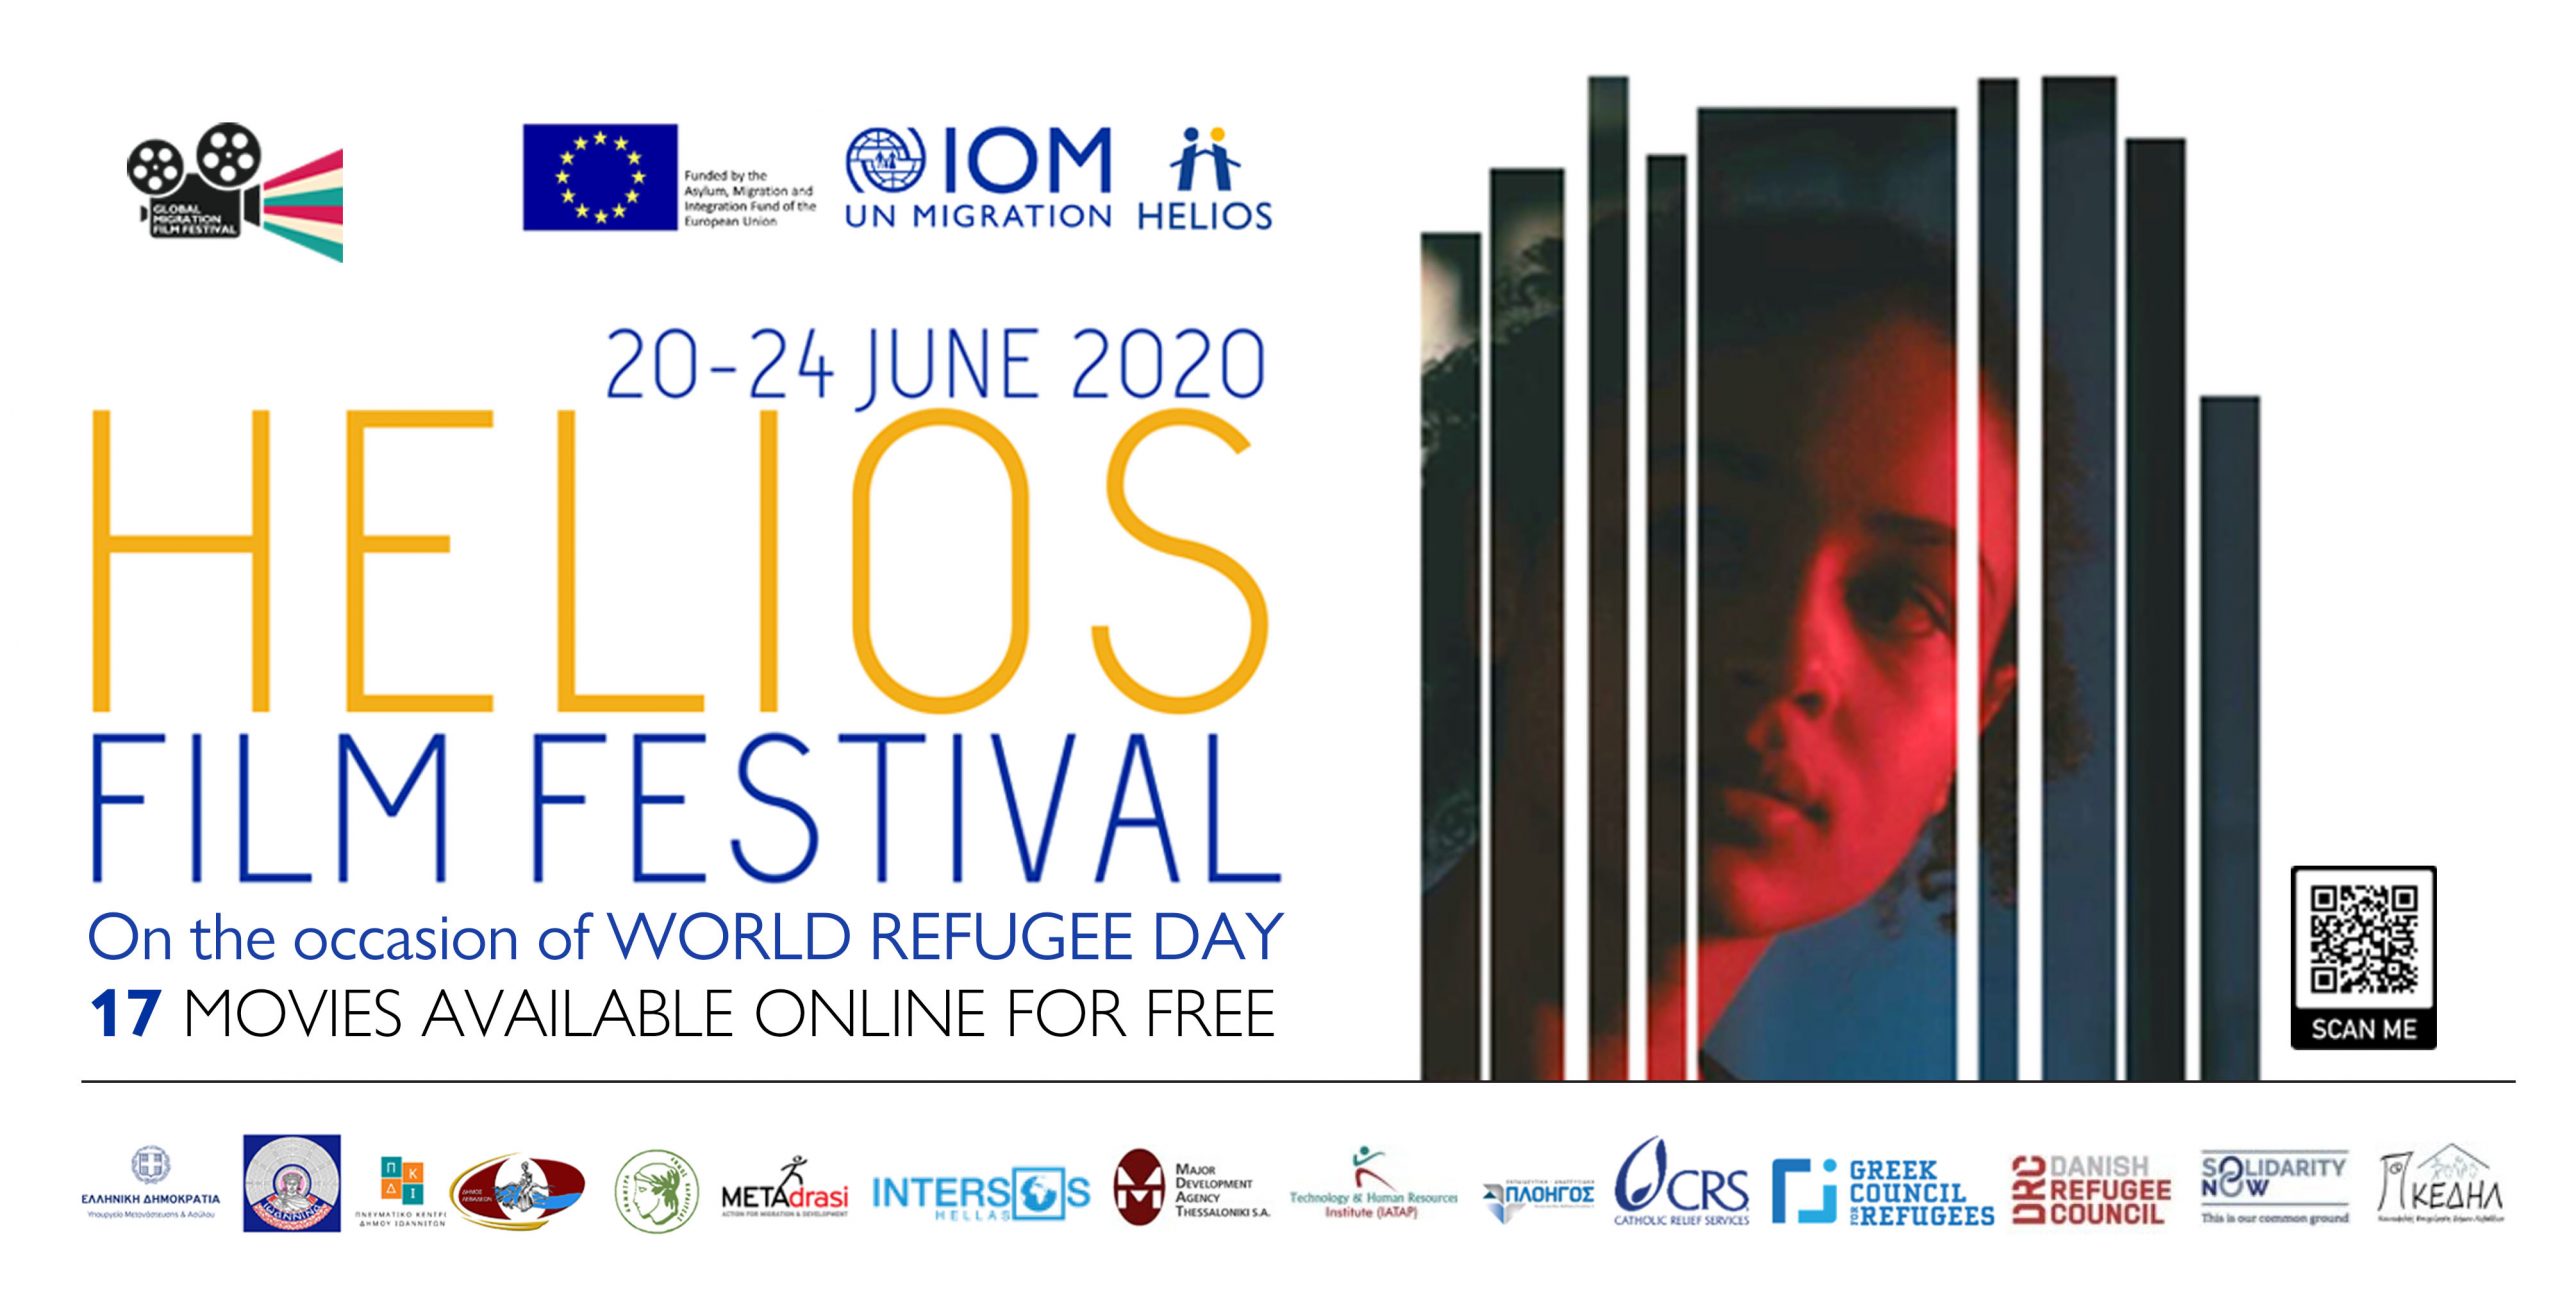  #HELIOS FILM FESTIVAL | Διαδικτυακό Φεστιβάλ Κινηματογράφου από τον ΔΟΜ